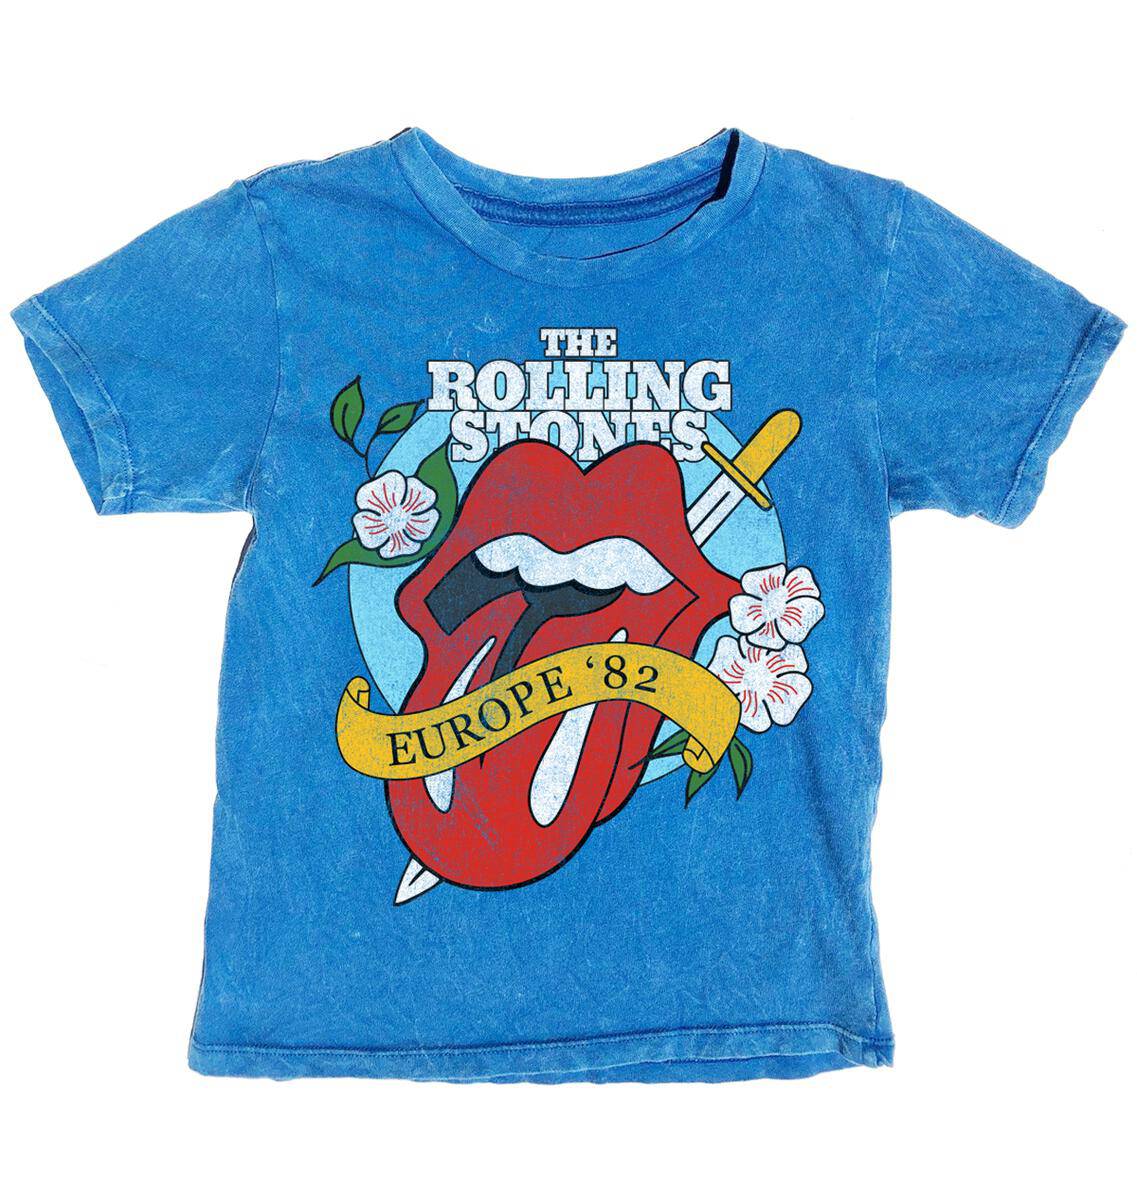 Rolling Stones Short Sleeve Tee - Twinkle Twinkle Little One